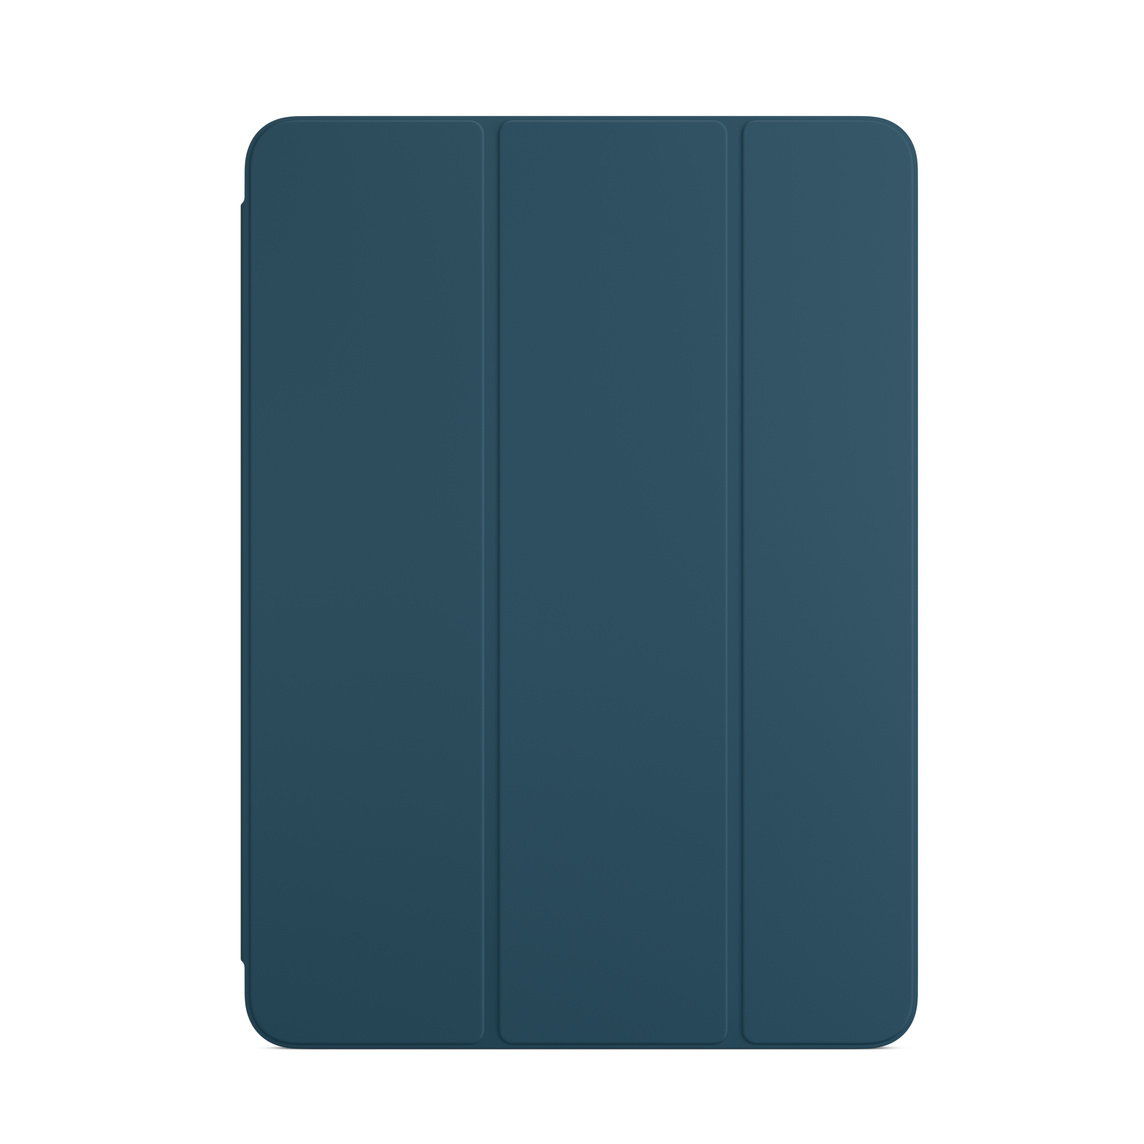 Funda Smart Folio para el iPad Air en azul mar.